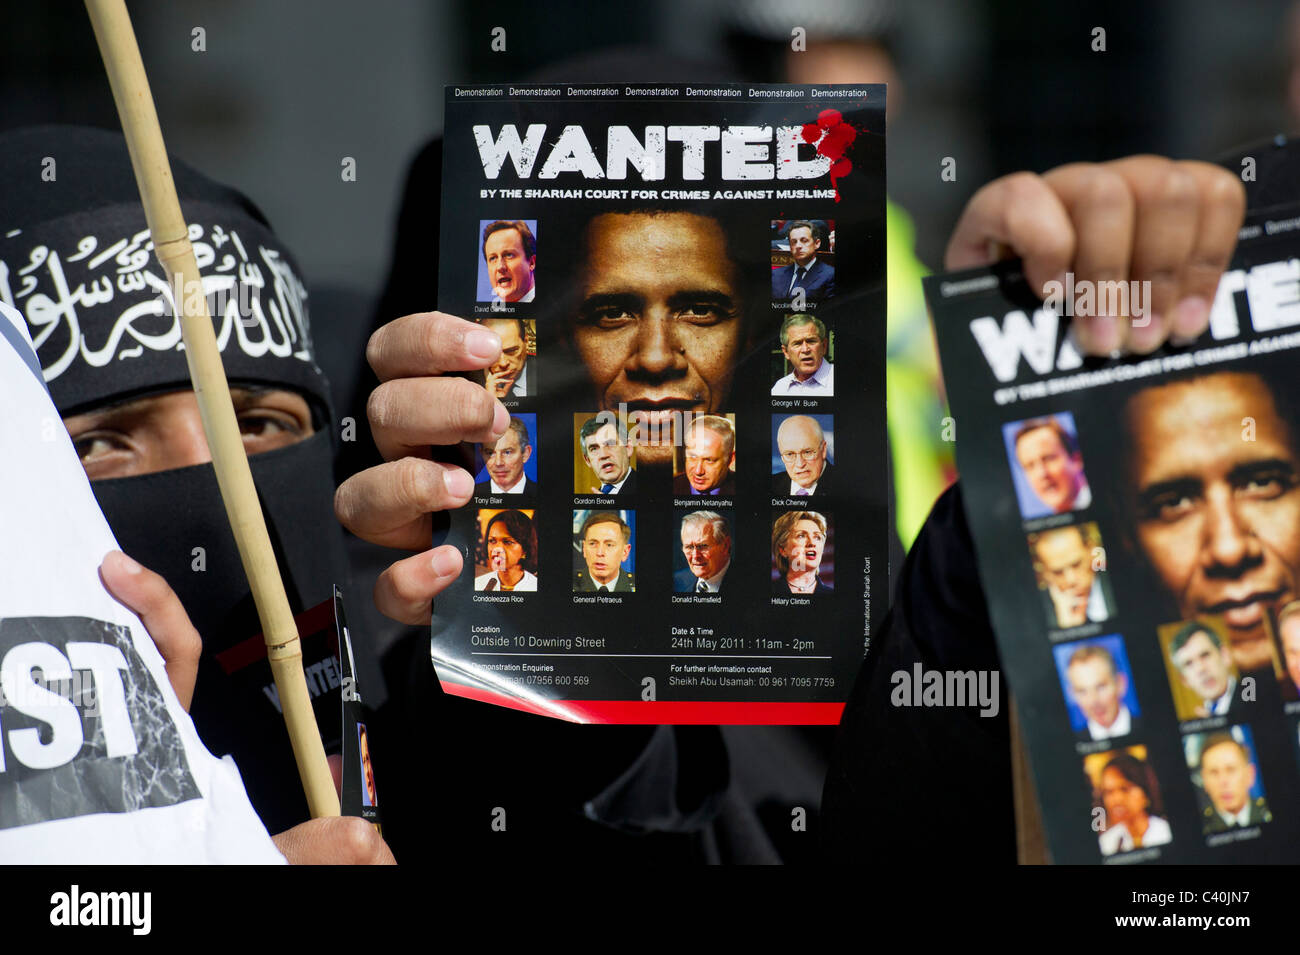 El tribunal islámico por crímenes contra los musulmanes tiene carteles Wanted del presidente Barack Obama en Whitehall durante su visita de estado Foto de stock